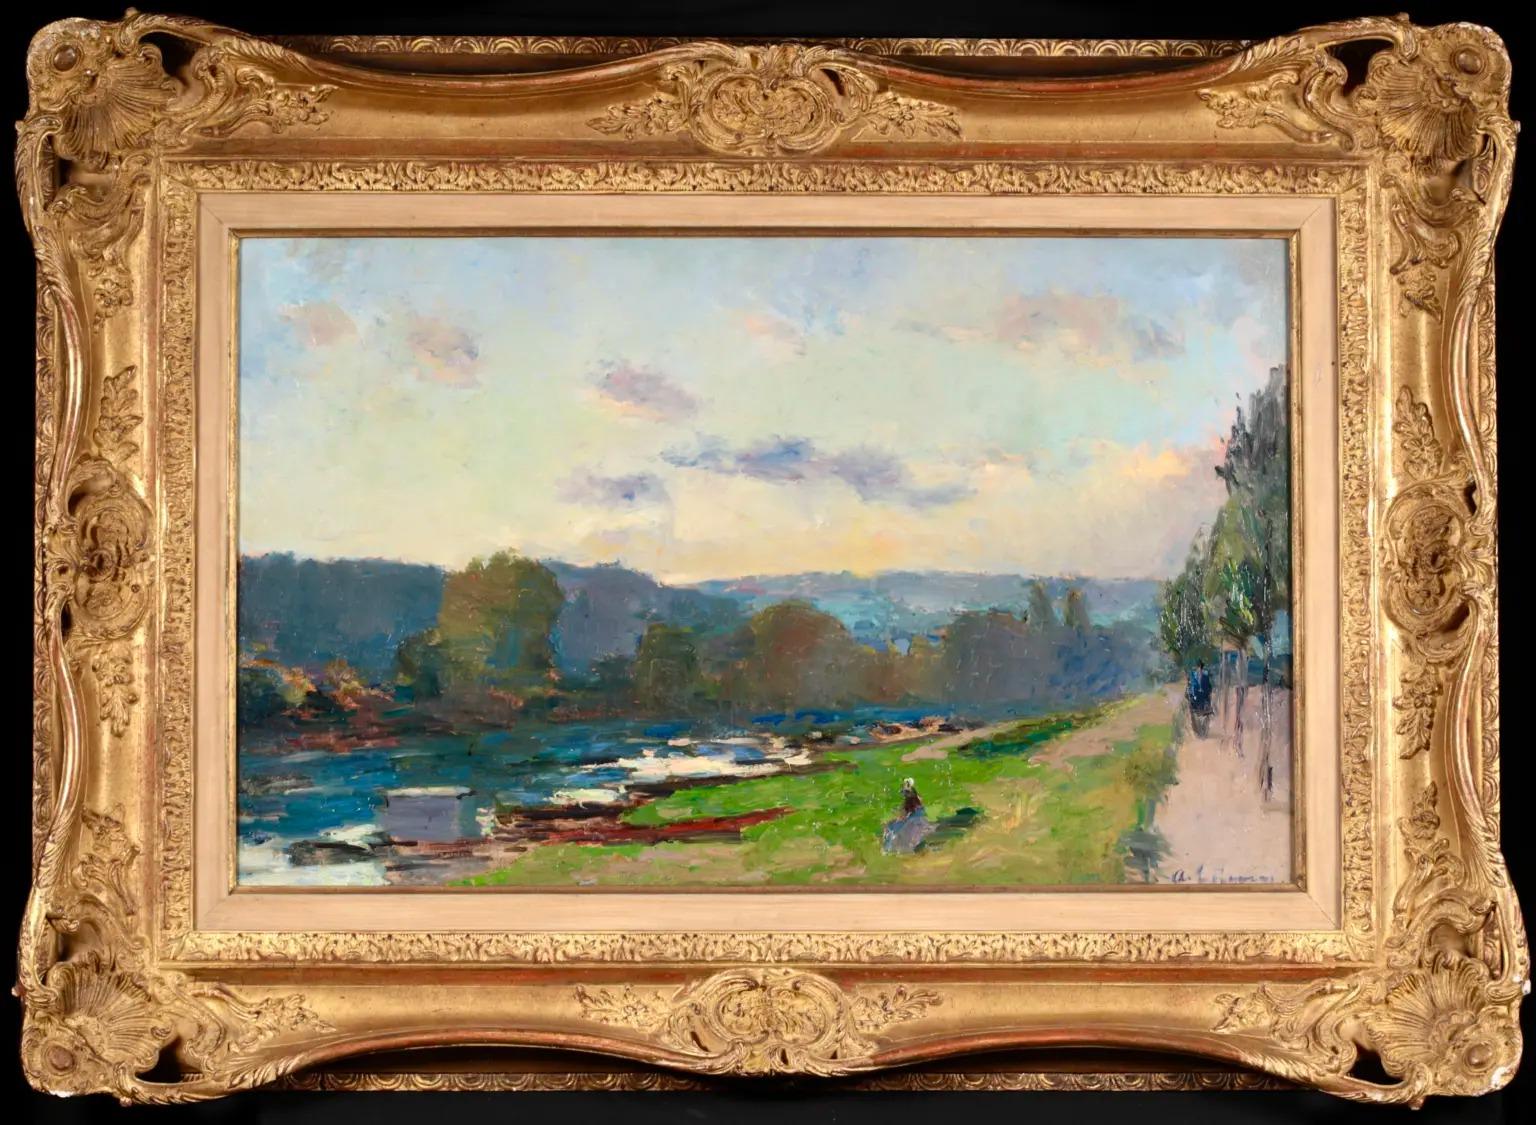 Huile sur toile originale signée, vers 1895, par le peintre post impressionniste français Albert Charles Lebourg. L'œuvre représente une vue de la Seine par une chaude journée d'été ensoleillée. Il y a une jeune femme assise sur la rive verte et